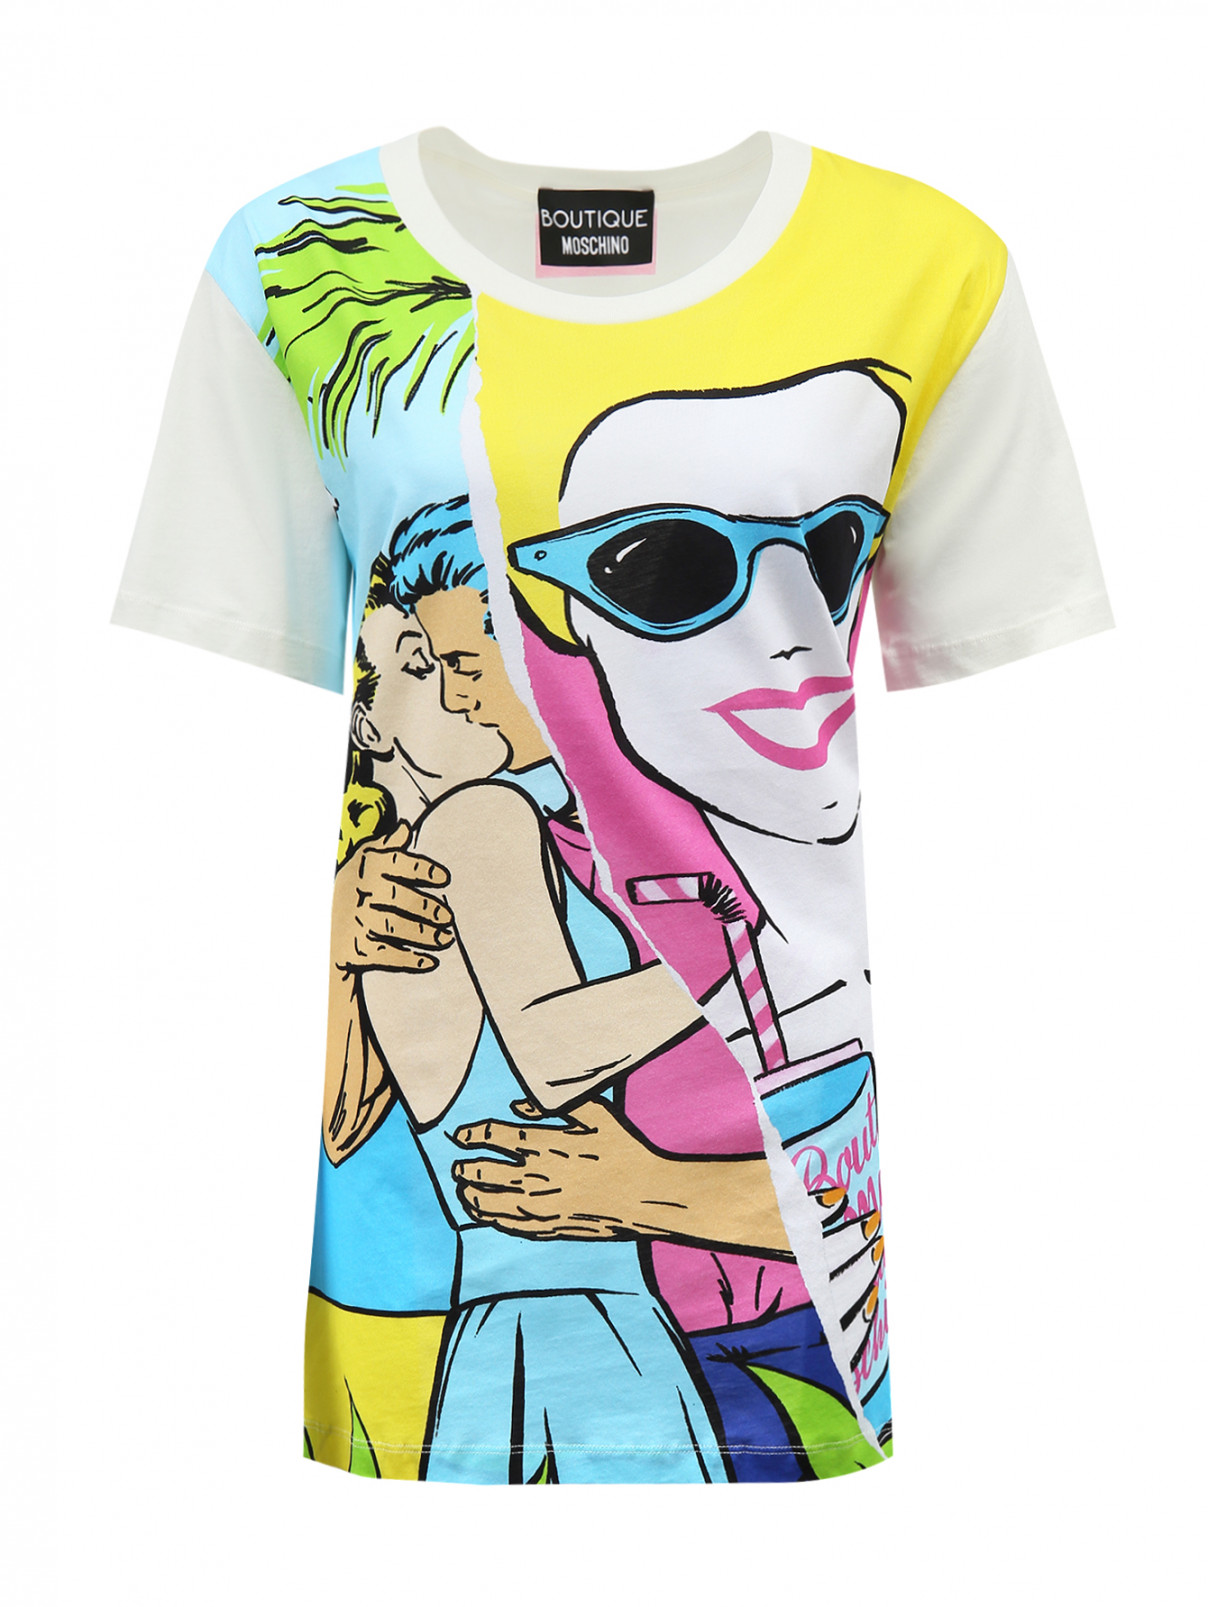 Удлиненная футболка из хлопка с принтом Moschino Boutique  –  Общий вид  – Цвет:  Мультиколор